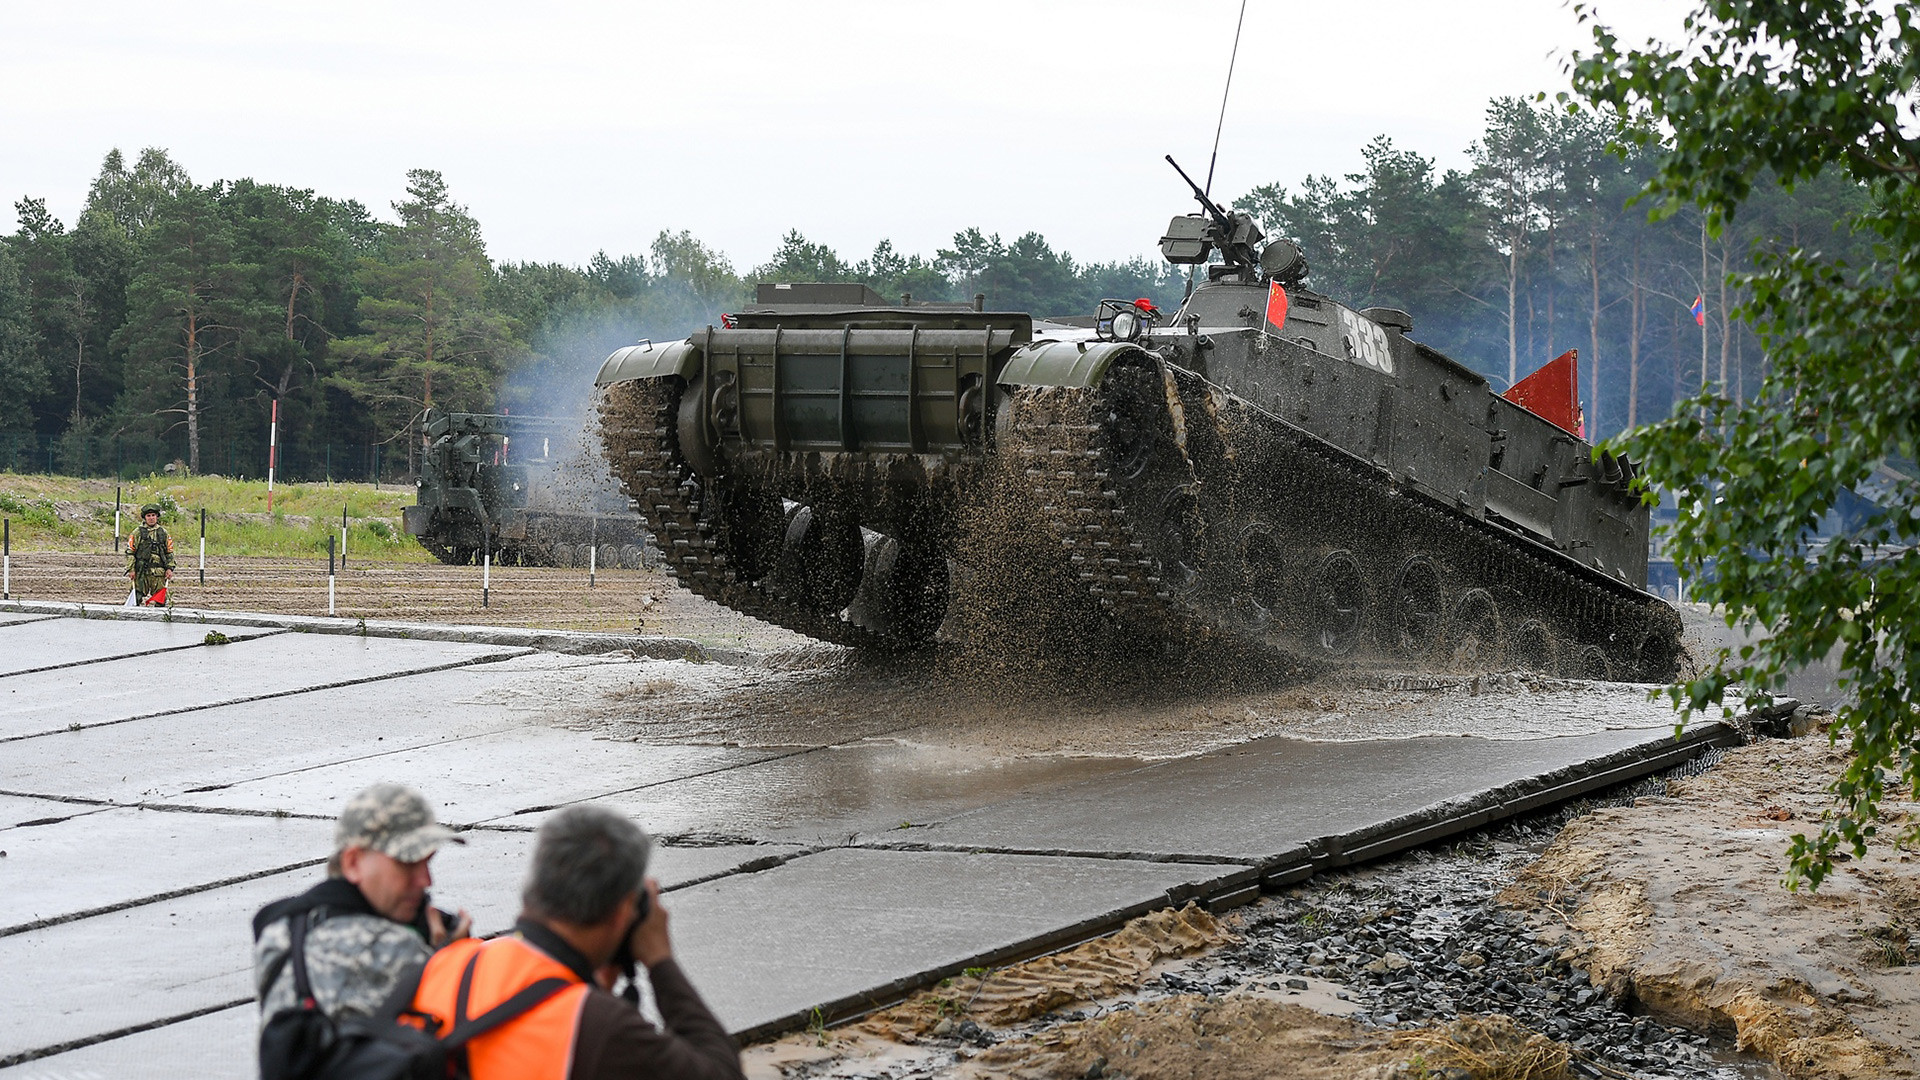 FOTO: Begini Cara Menyeberangkan Tank di Sungai Raksasa - Russia Beyond